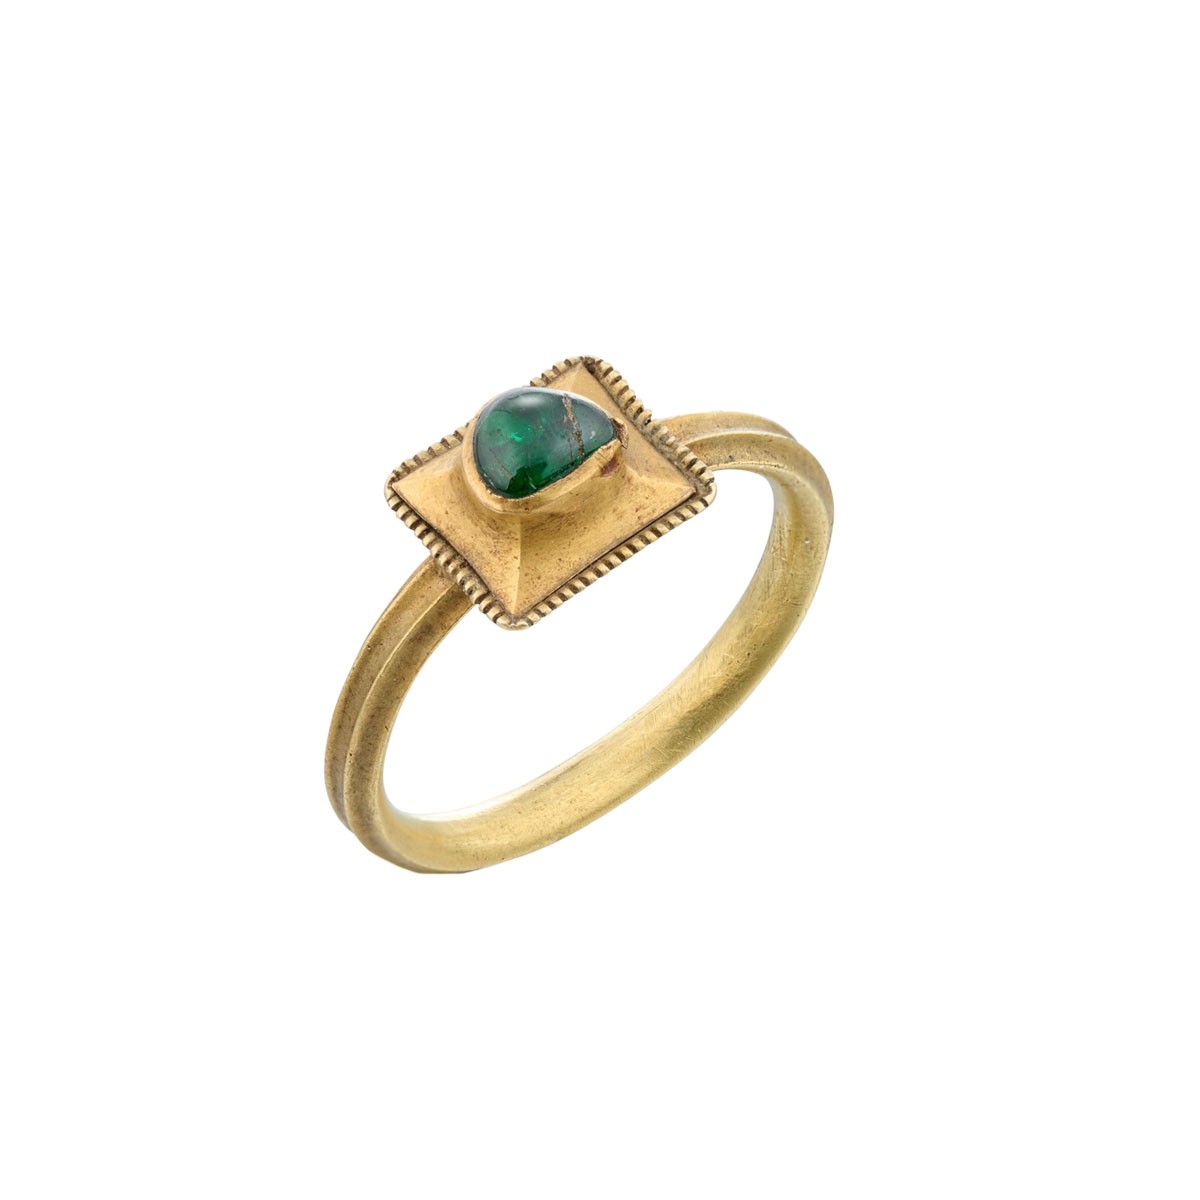 22 Karat Gold Ring Medieval - 8 For Sale on 1stDibs